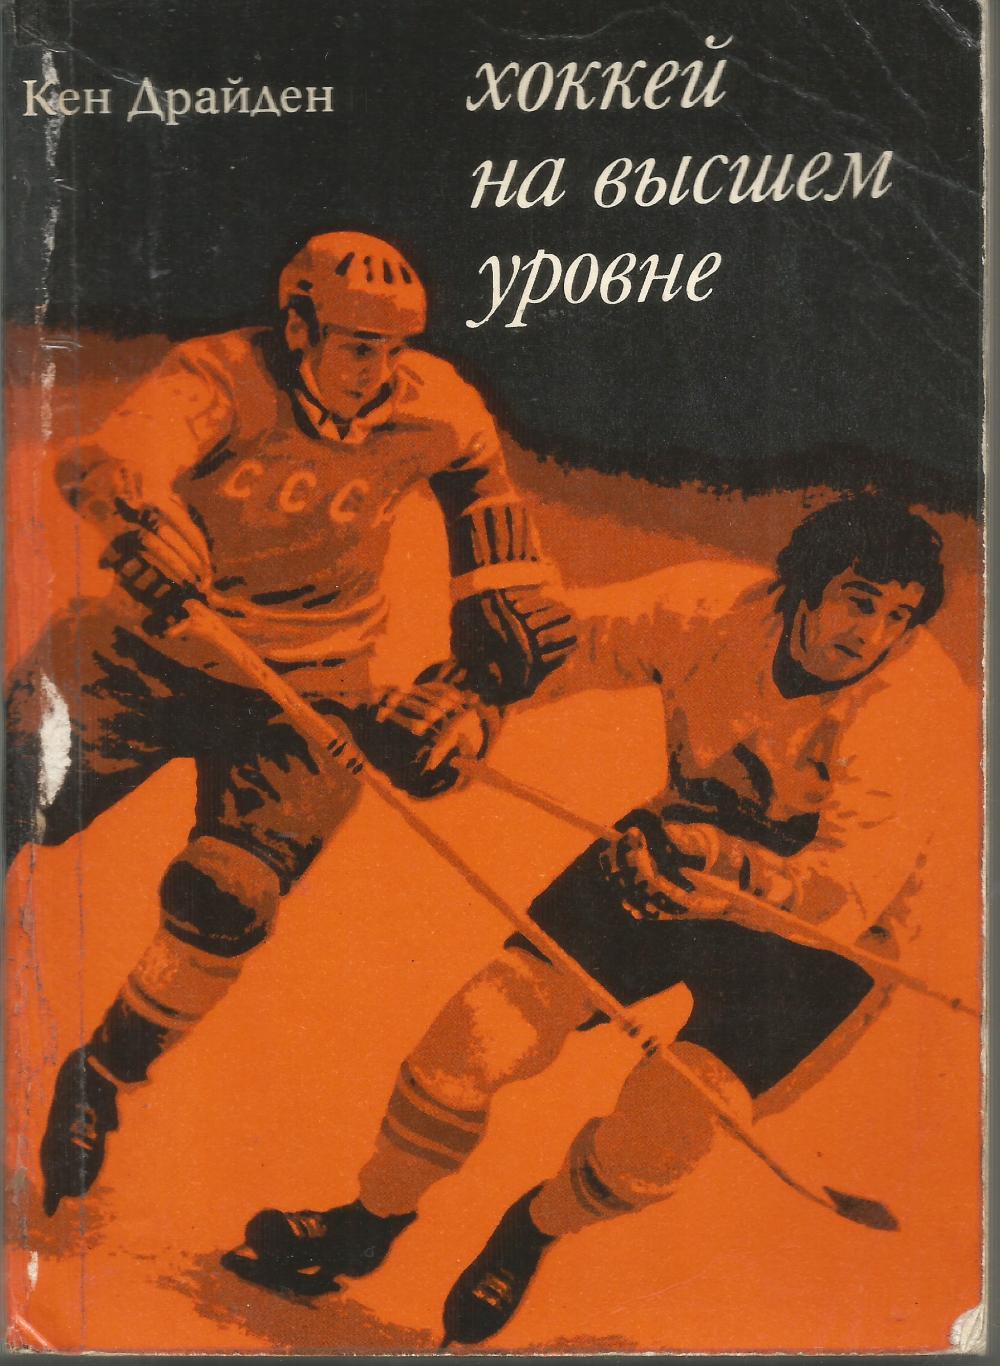 1975 Кен Драйден Хоккей на высшем уровне Прогресс 196 стр